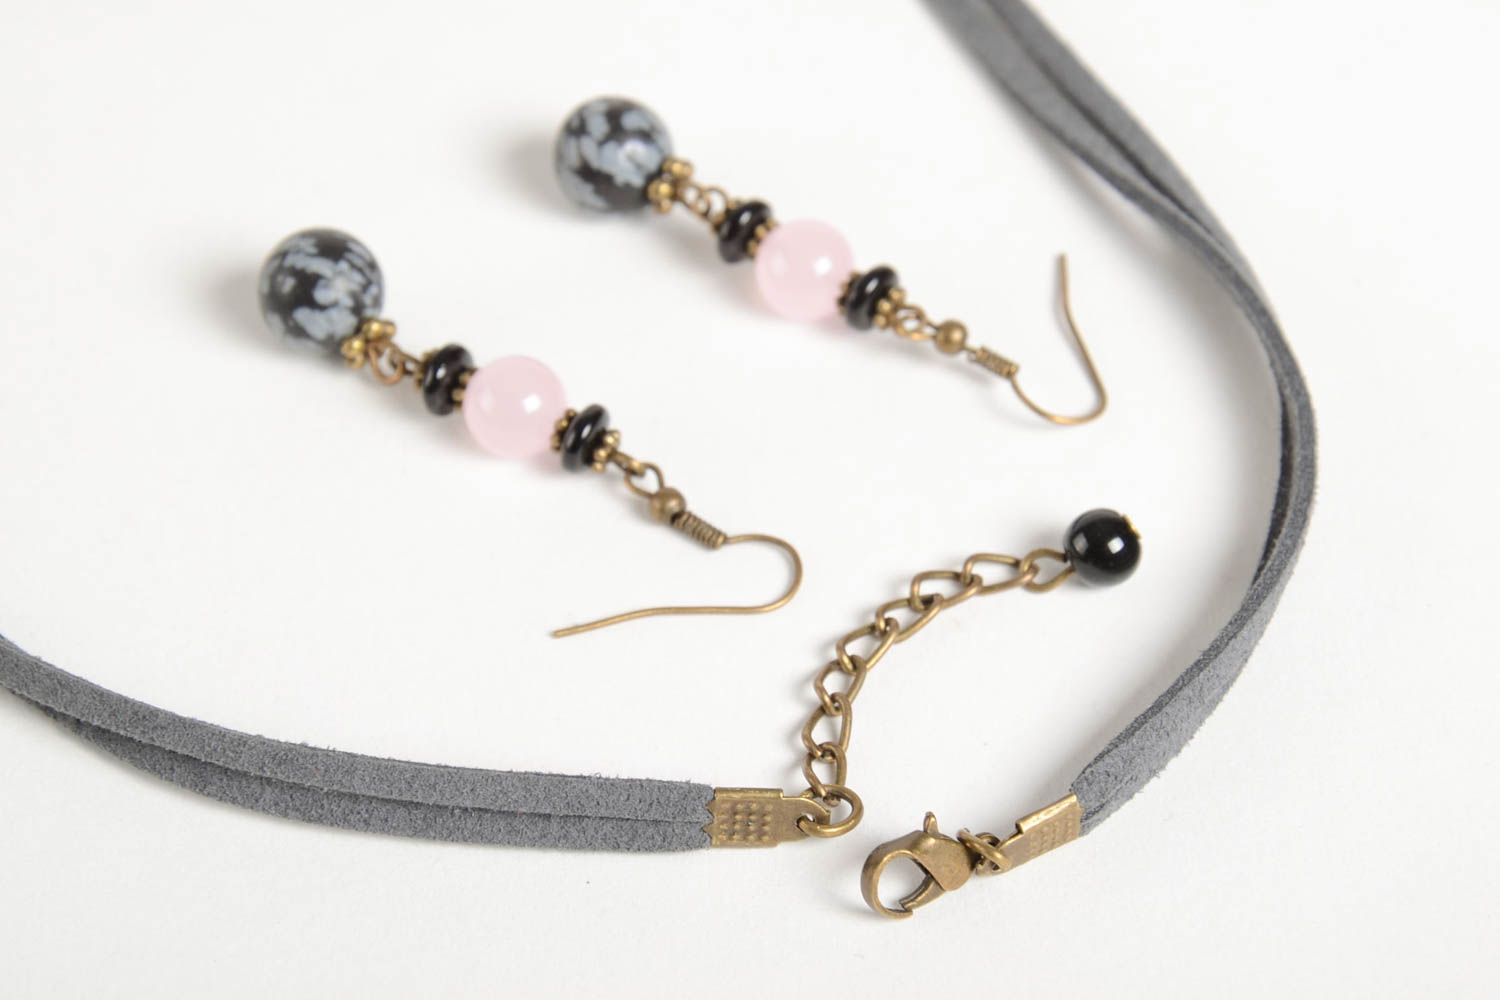 Handmade designer earrings stylish elegant necklace natural stone jewelry set photo 4